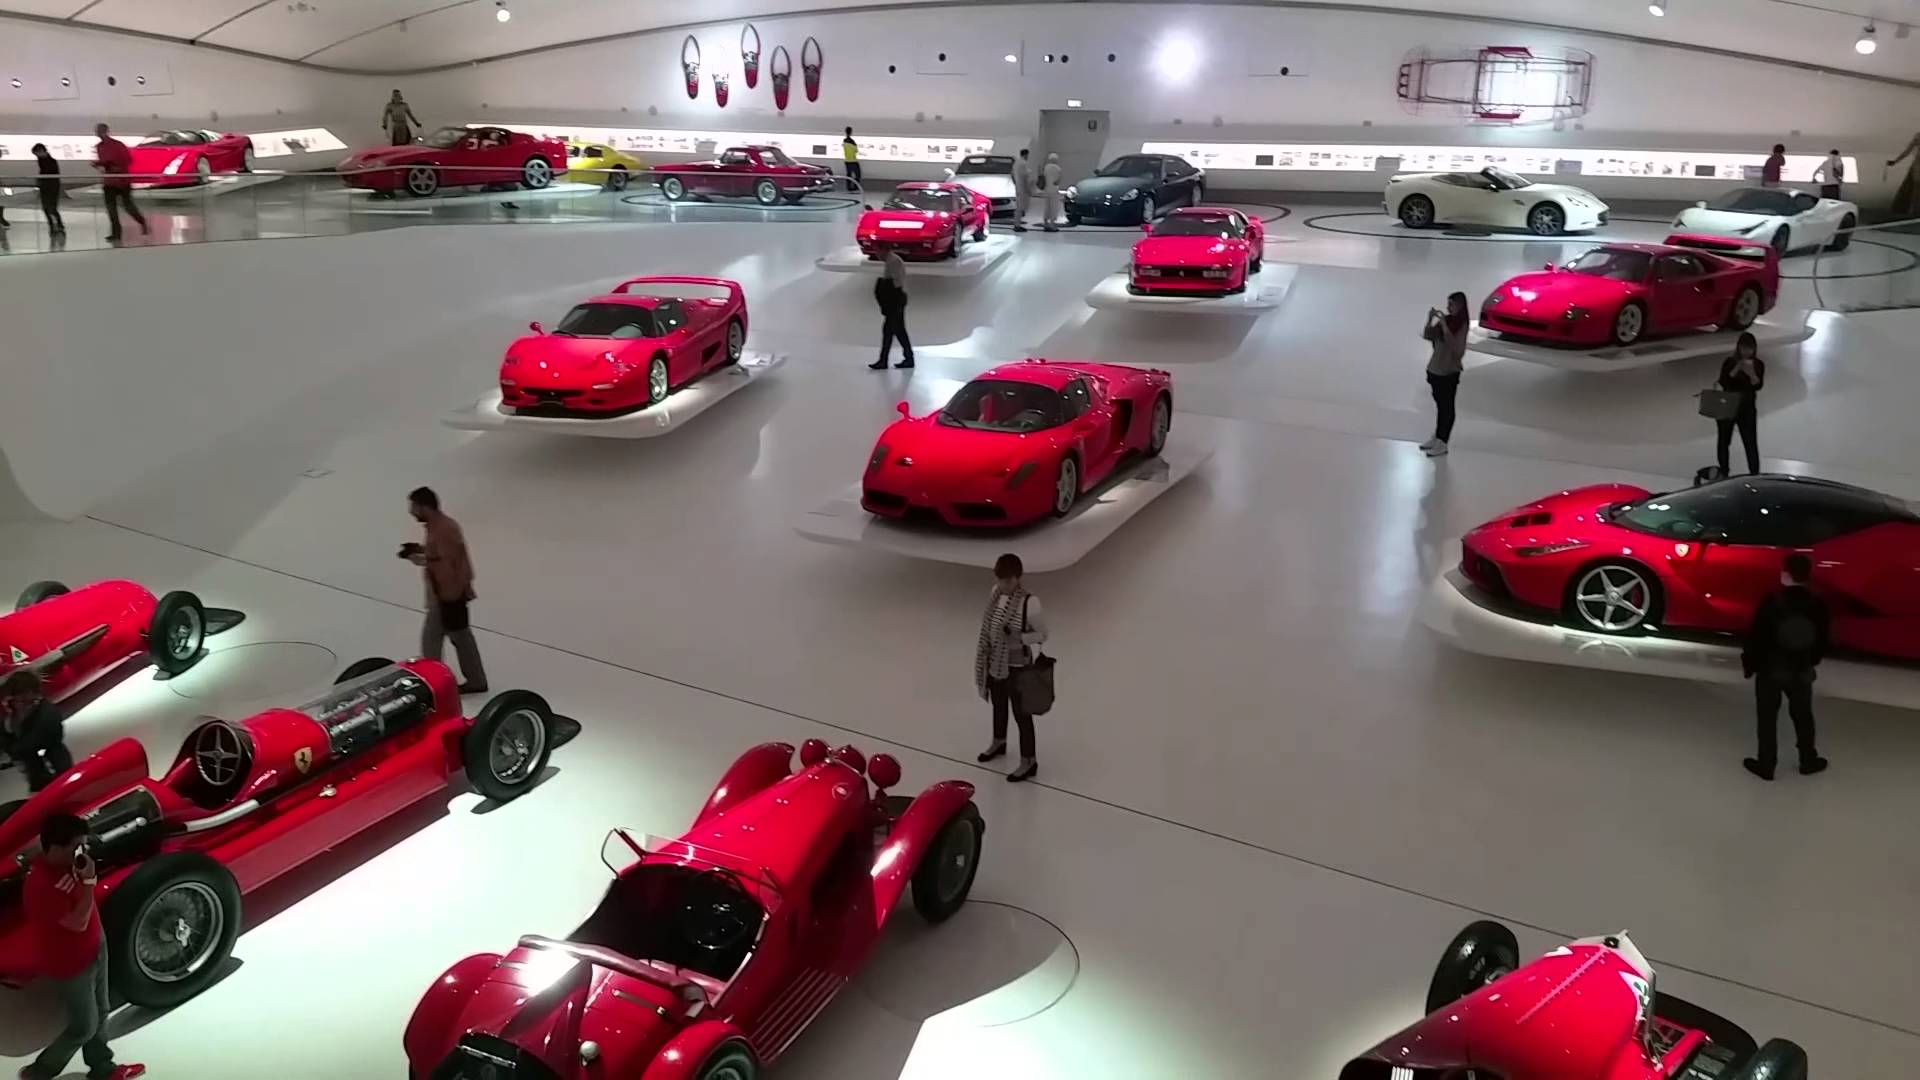 Mein Schiff Ausflugsziel: Ferrari Museum in Maranello